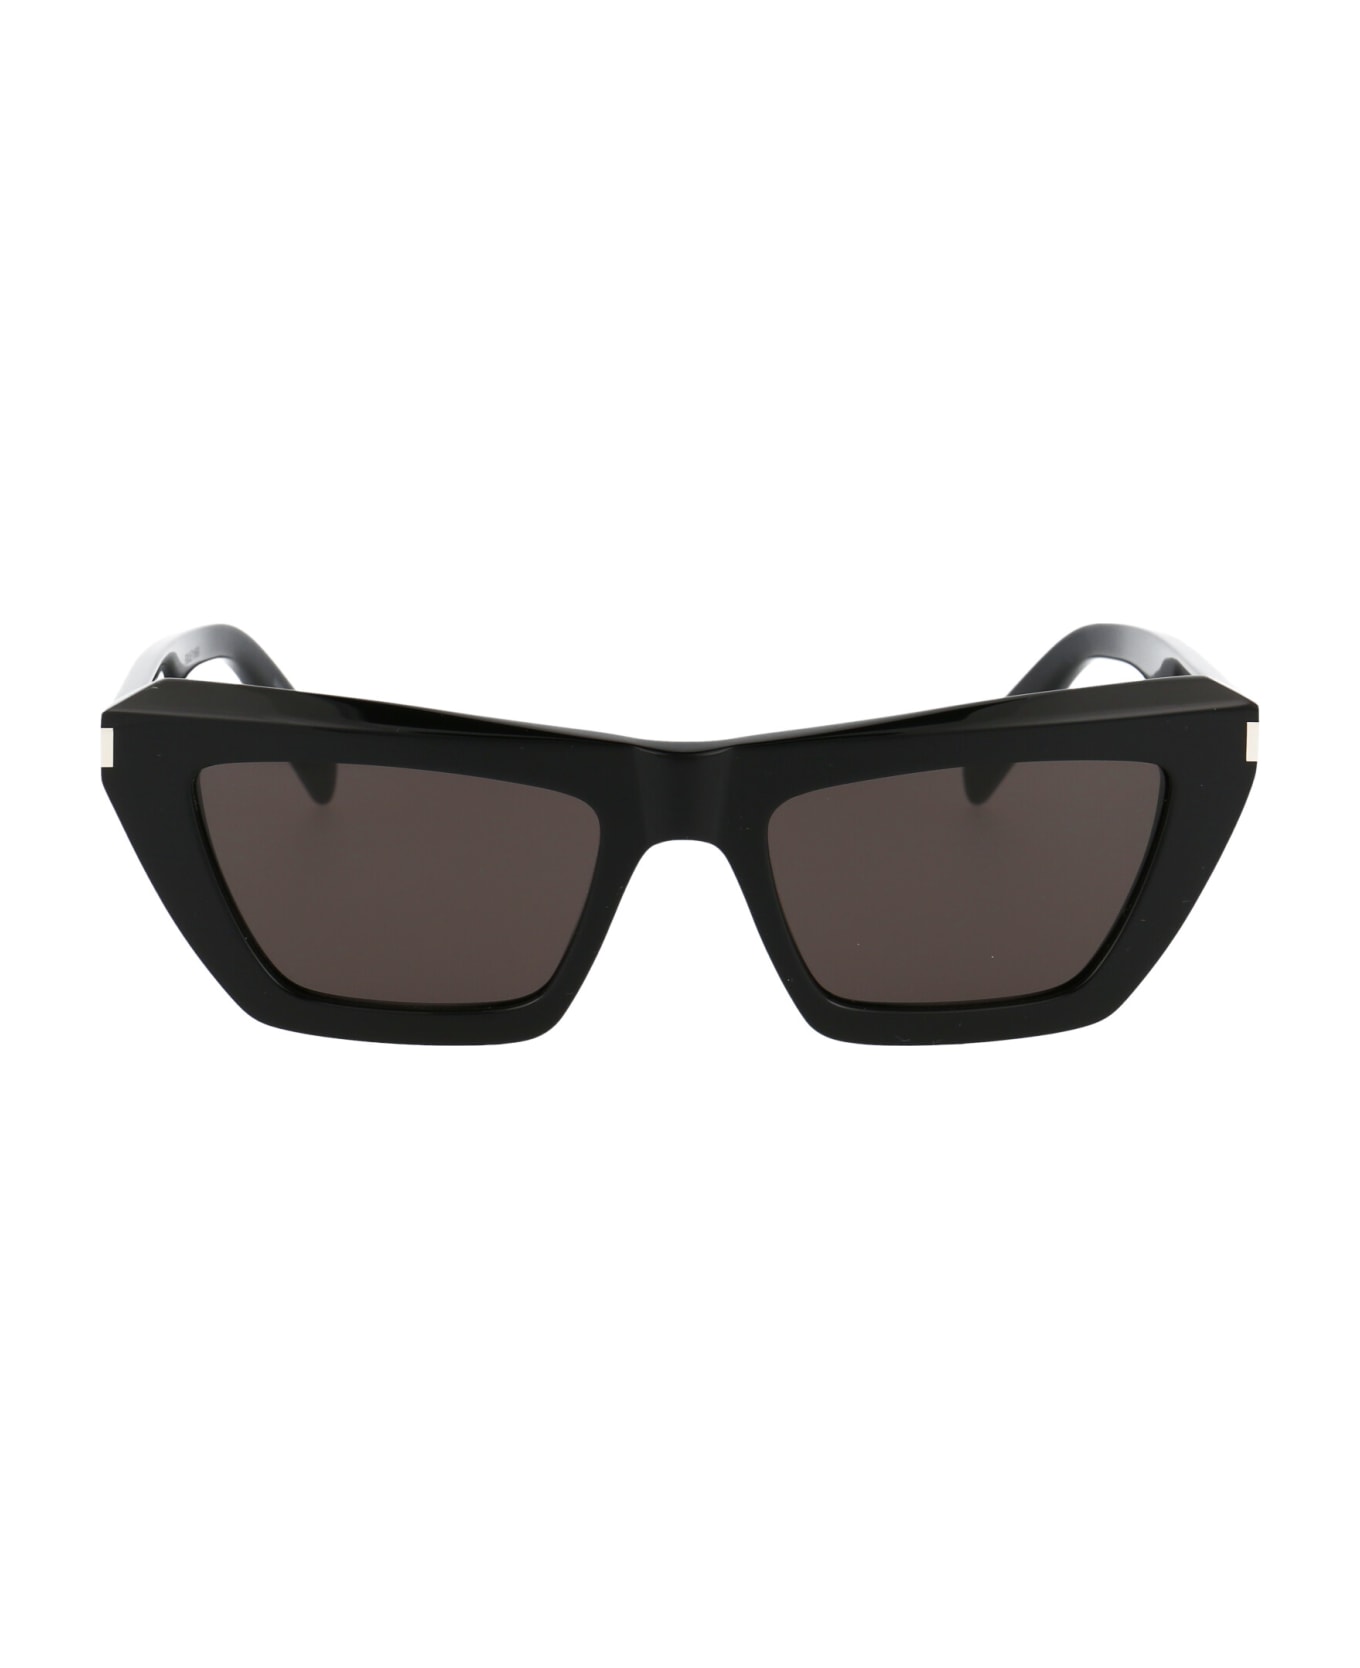 Saint Laurent Eyewear Sl 467 Sunglasses - 001 BLACK BLACK BLACK